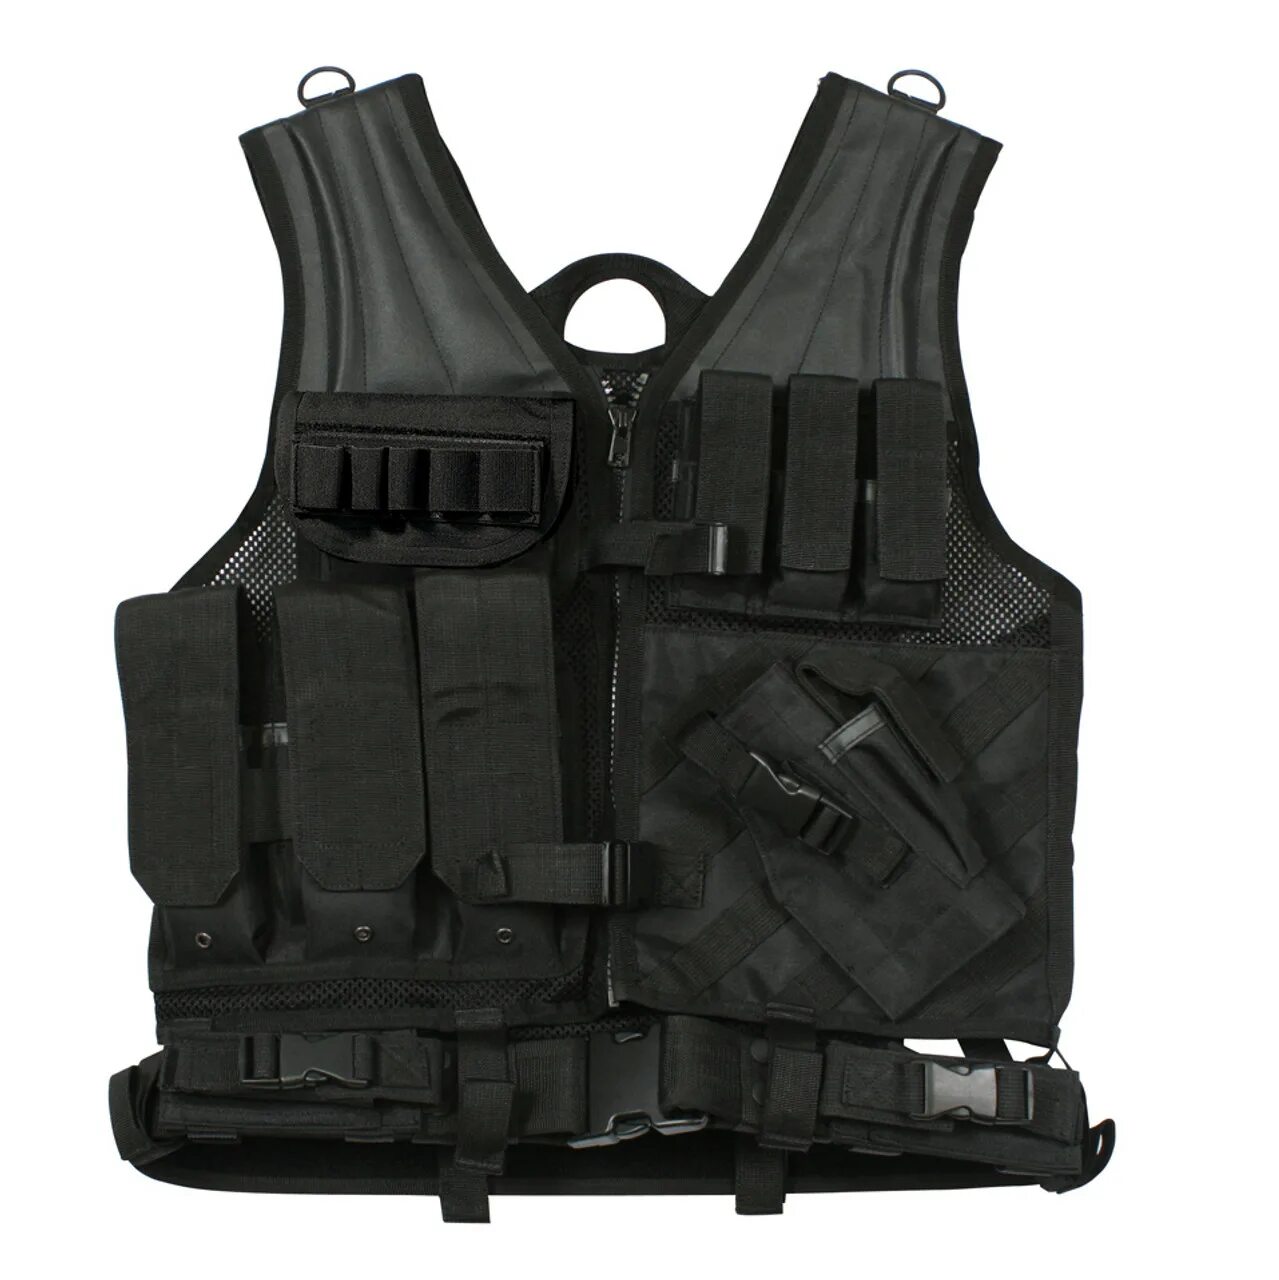 Tactical vest. Тактический жилет Black (vt088b). Black Hawk разгрузочный жилет. Разгрузочный жилет Vest Tactical. Тактический жилет Molle.